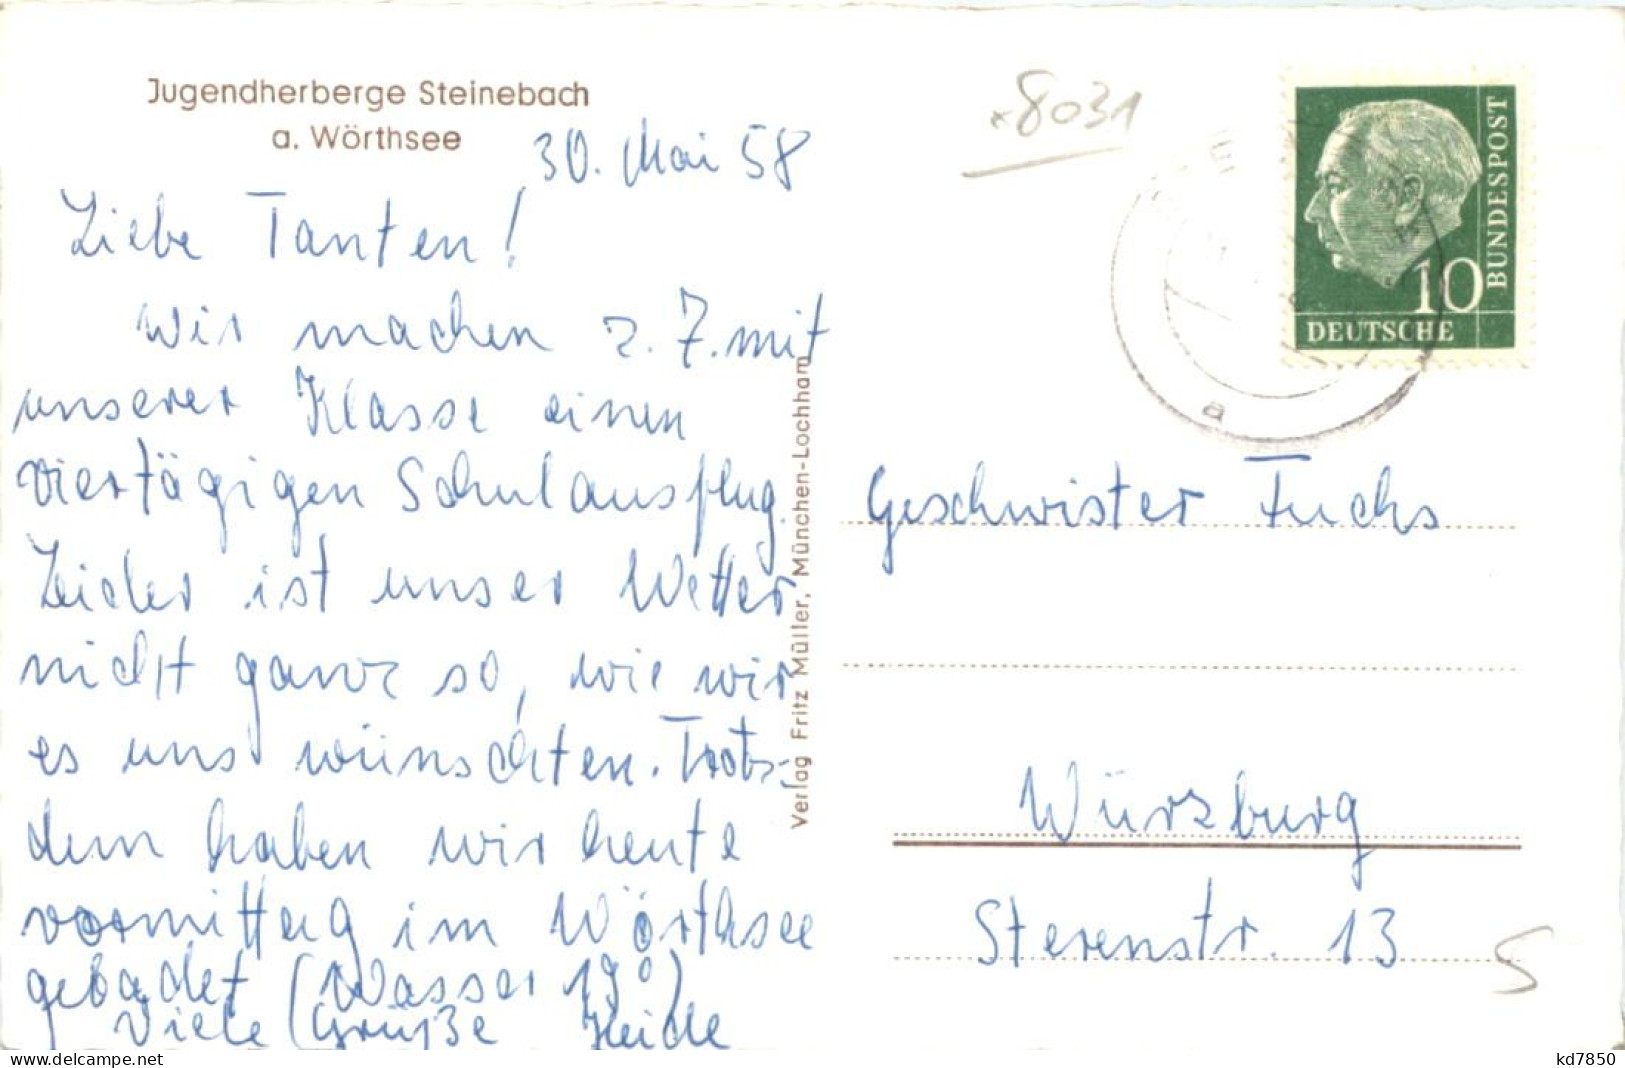 Wörthsee, Steinebach,, Jugendherberge - Starnberg